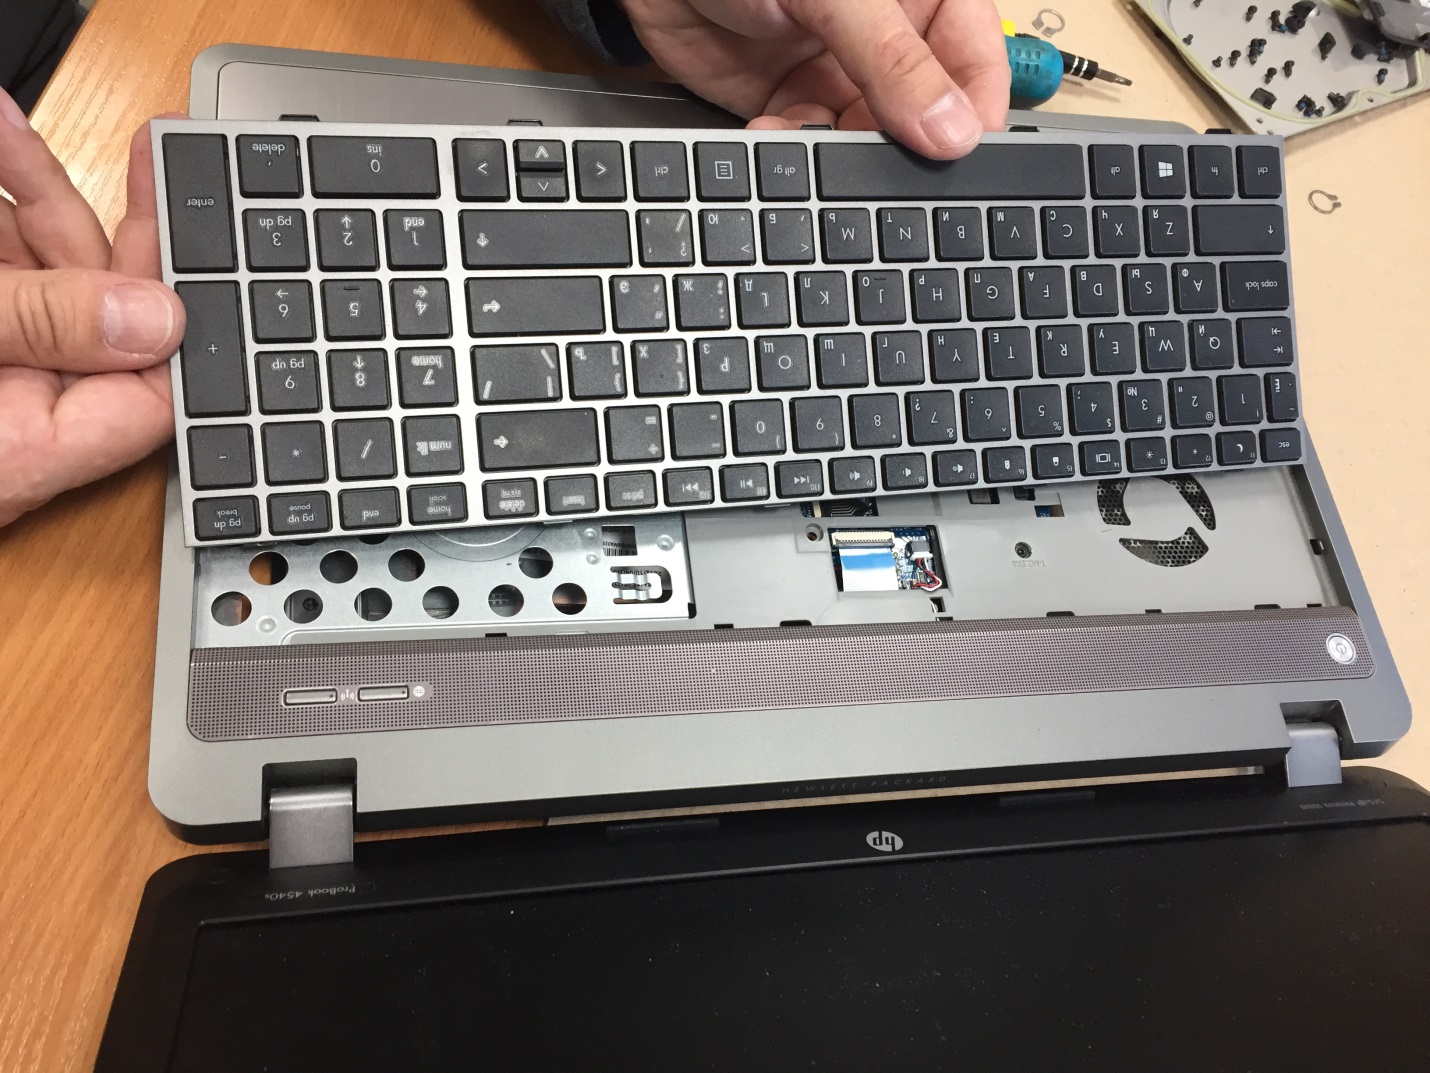 Клавиатура снята, теперь вы можете заменить ее исправной и собрать ноутбук в обратном порядке